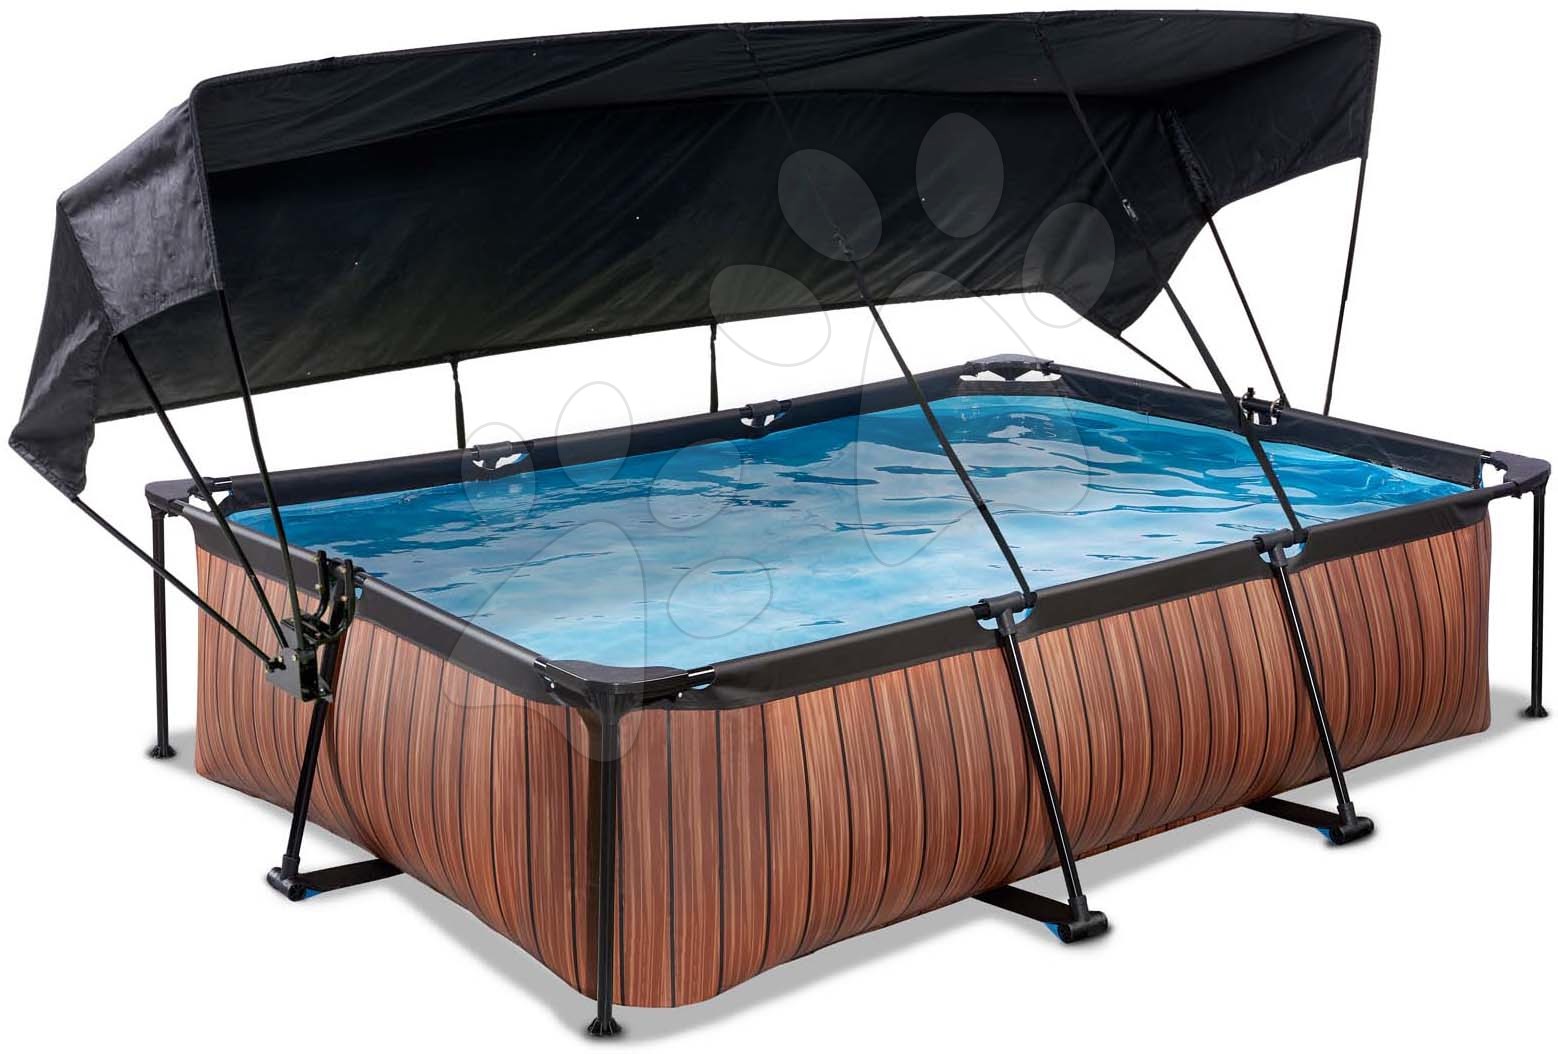 Bazén se stříškou a filtrací Wood pool Exit Toys ocelová konstrukce 300*200 cm hnědý od 6 let